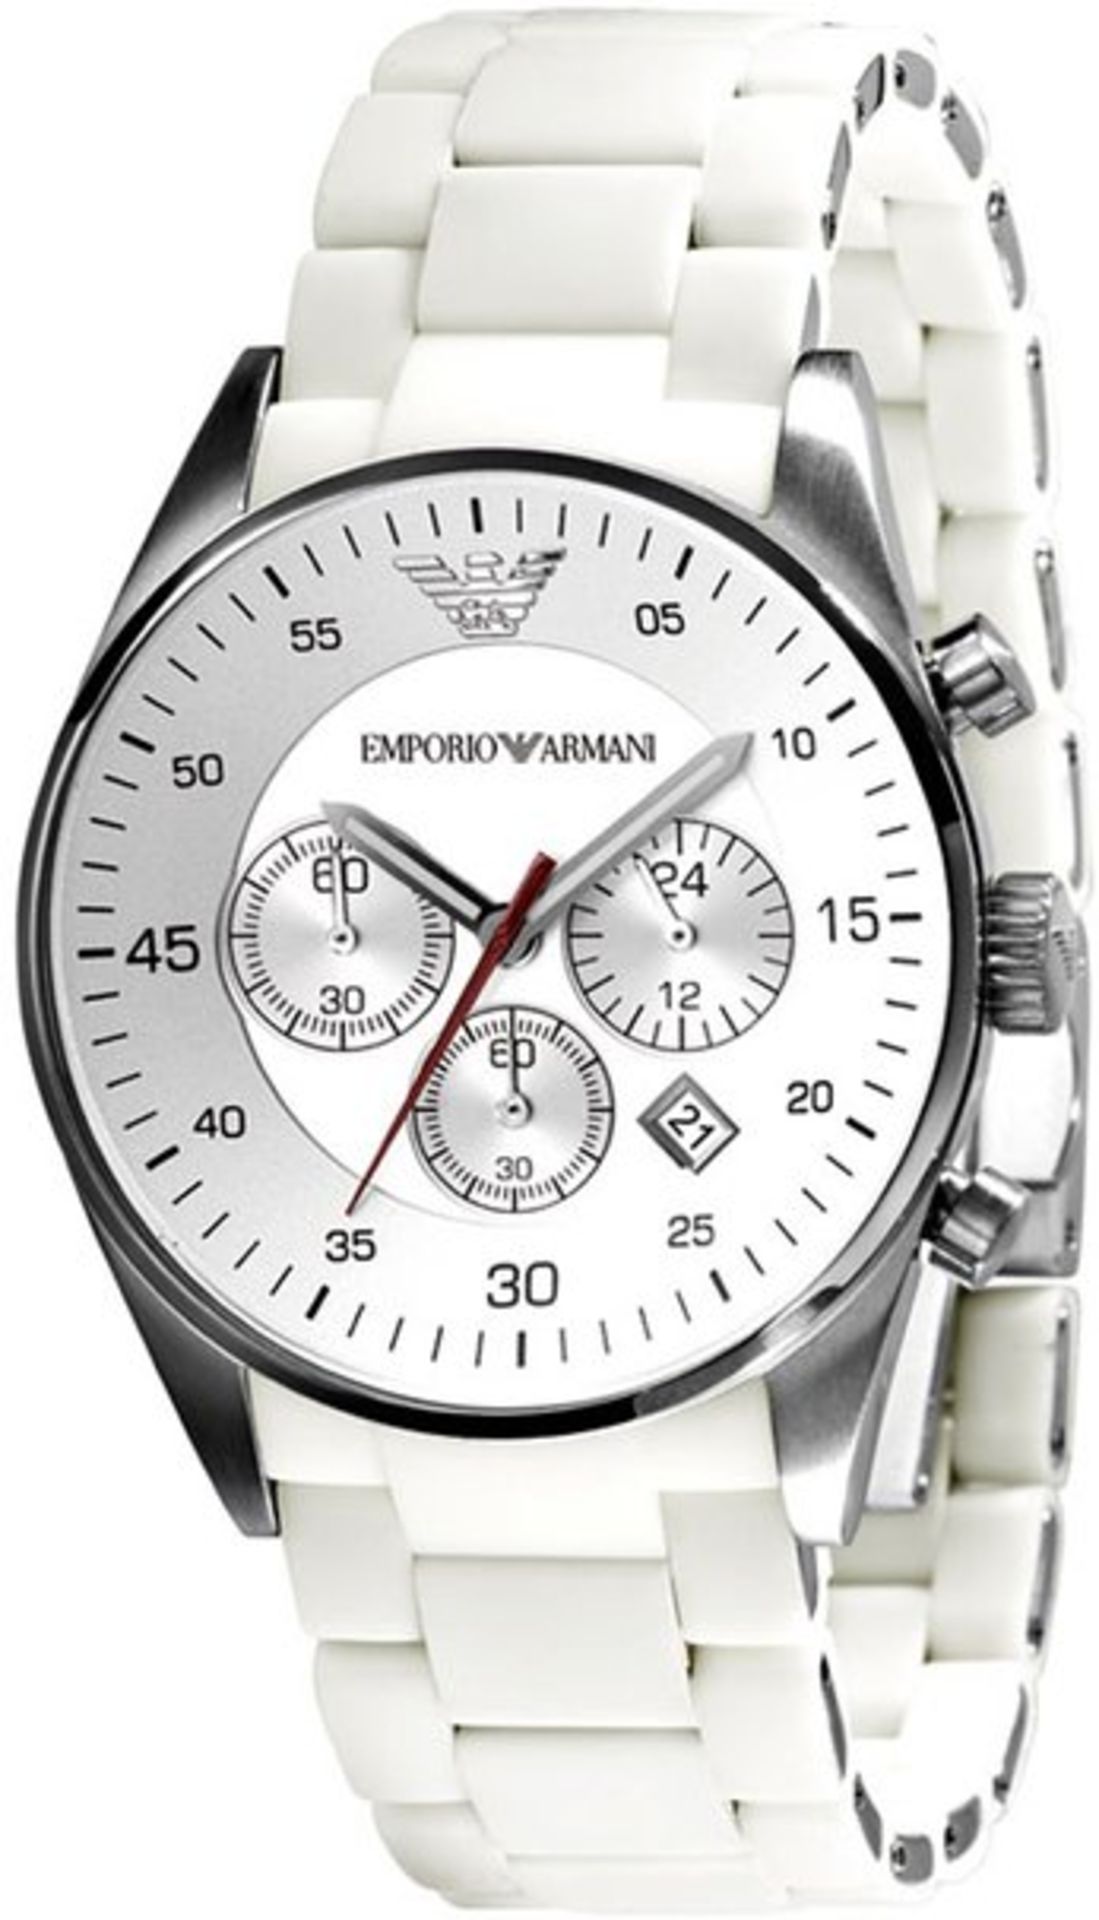 AR 5859 Gents Emporio Armani Designer Watch RRP349.99